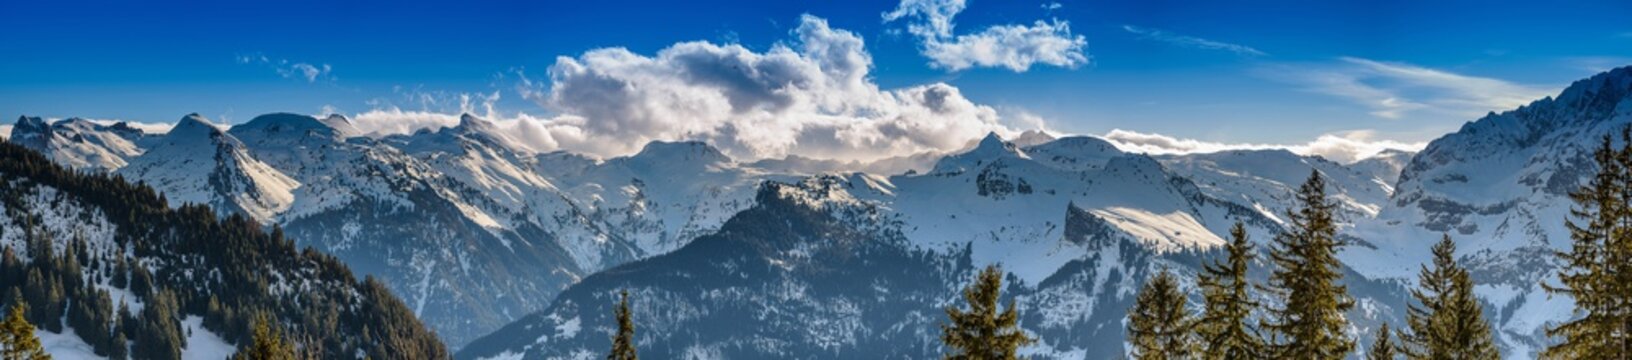 Alpenpanorama Schweiz bei Schnee und strahlendem Sonnenschein im Winter © FSteiger